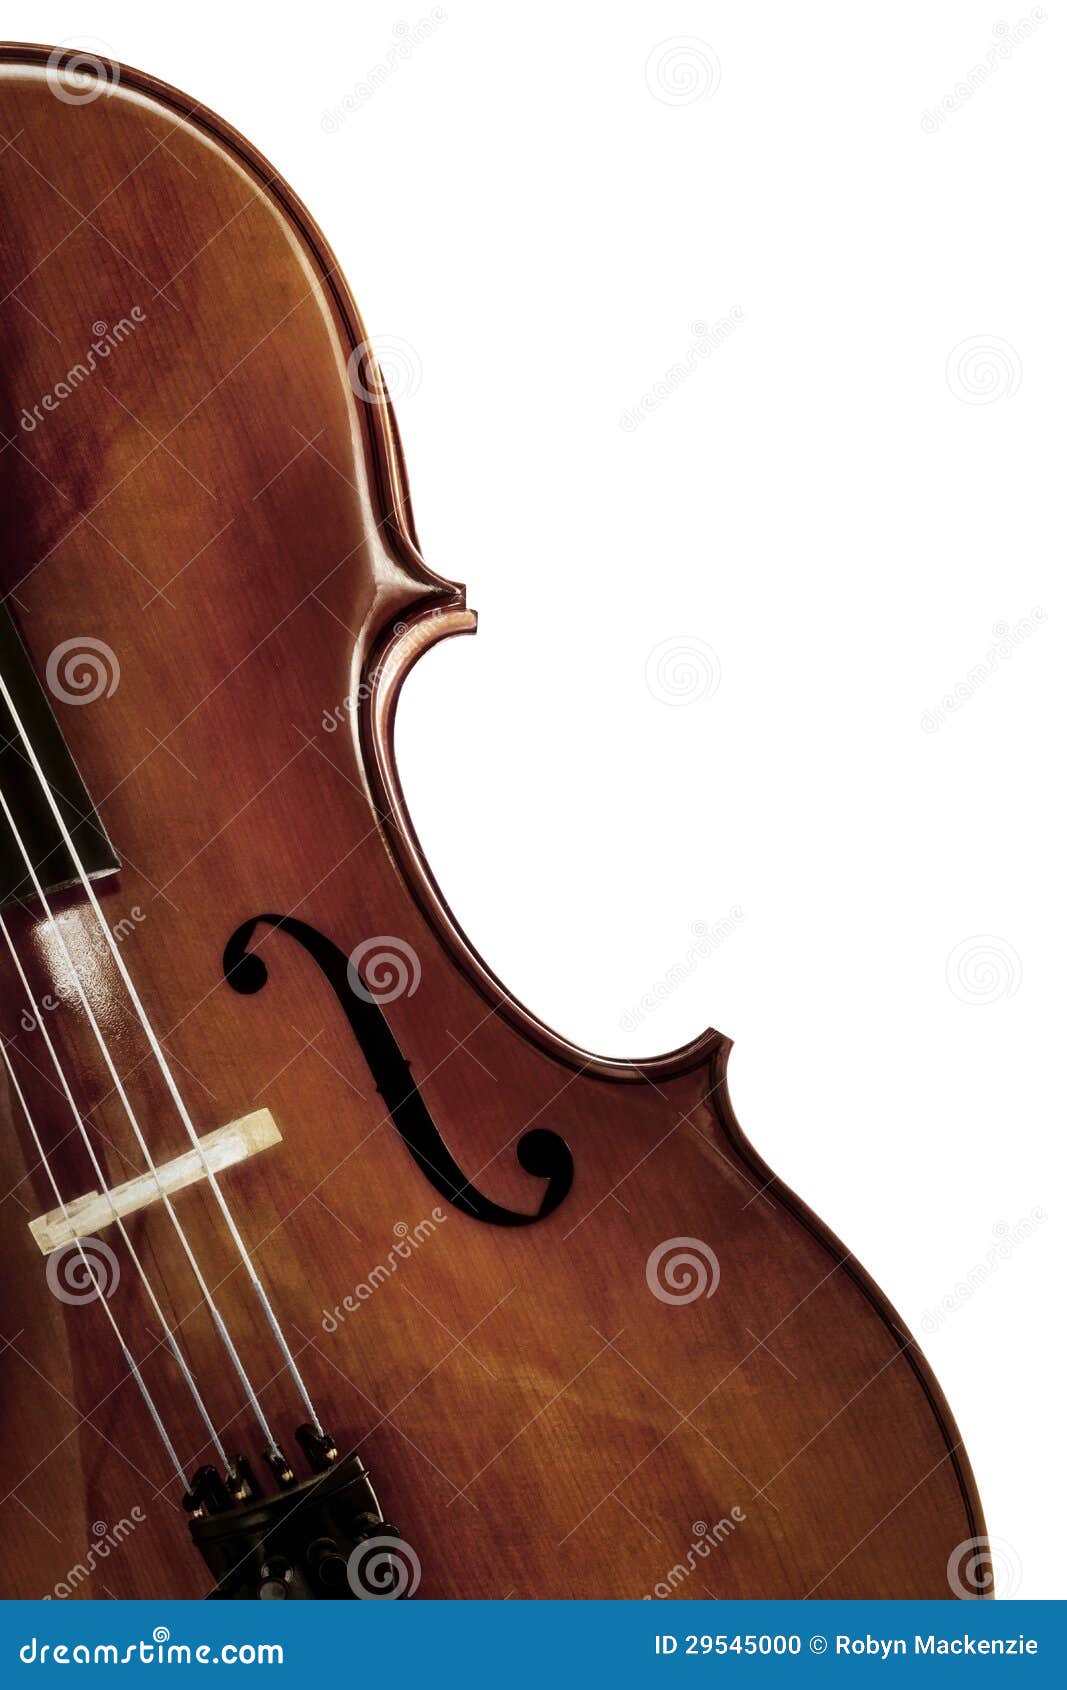 cello over white